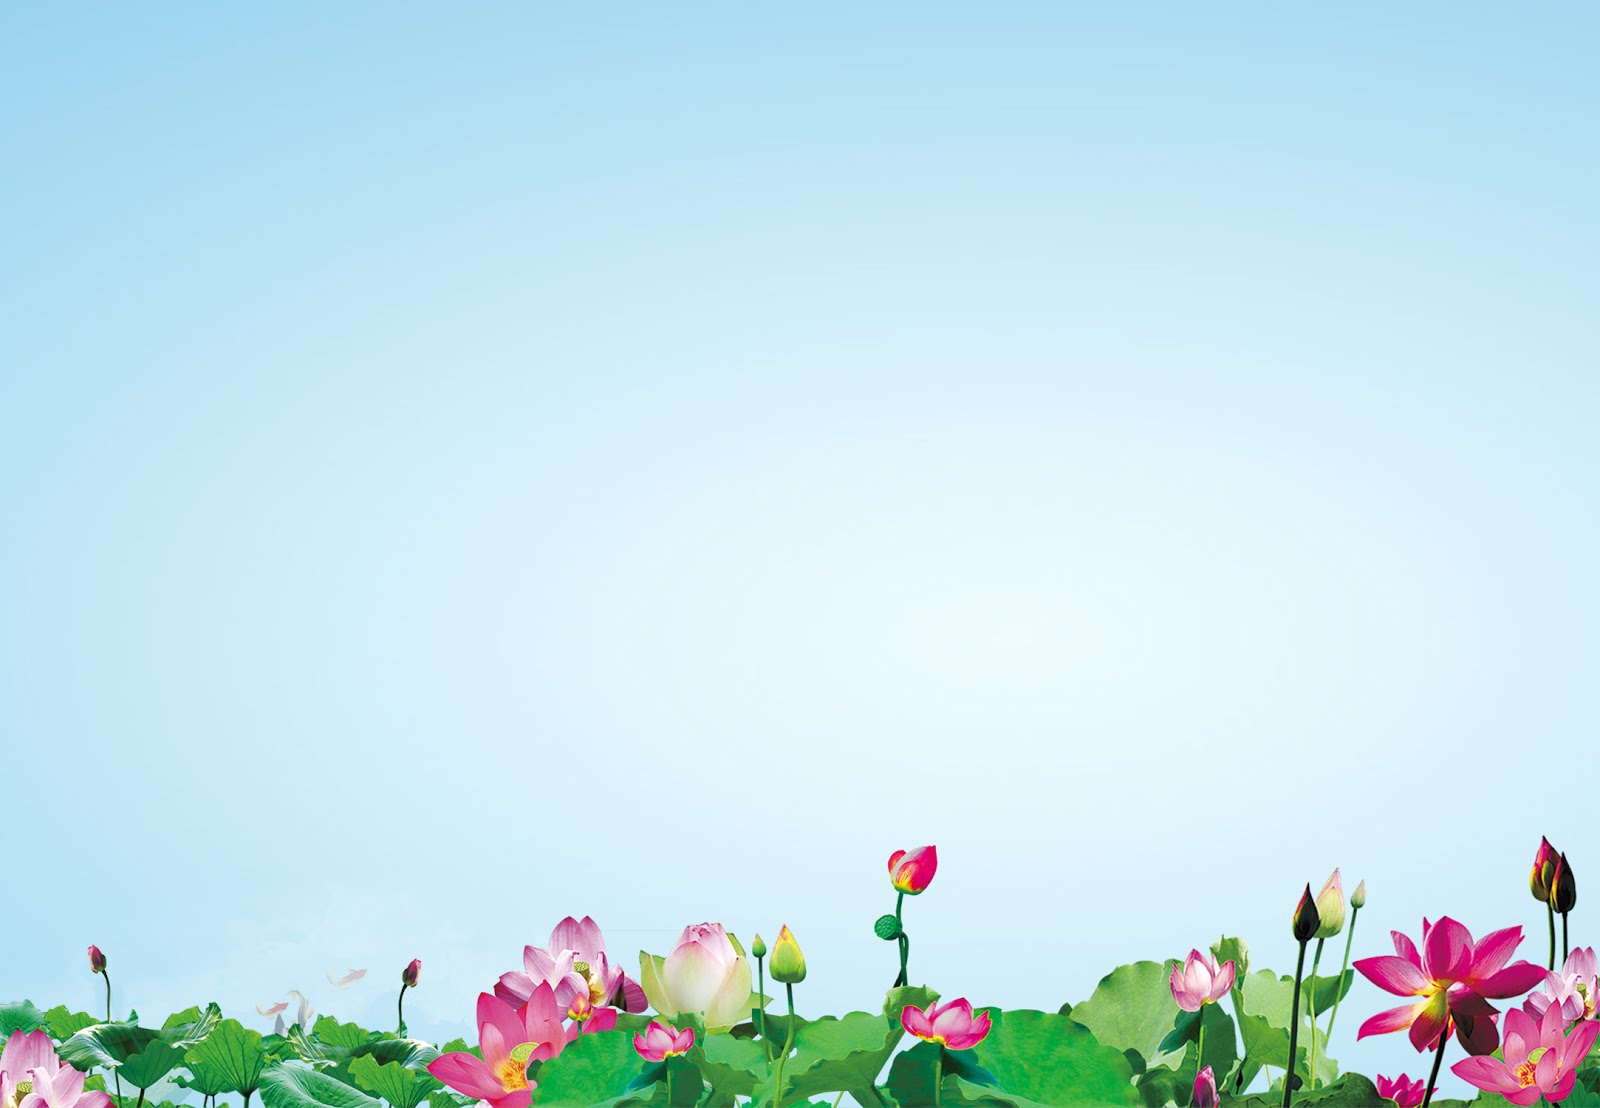 Phông nền hoa sen (Lotus background design): Một phông nền hoa sen sẽ mang đến cho bạn một cảm giác yên bình và hoà quyện với thiên nhiên. Những đường nét của hoa sen sẽ tạo nên một màu sắc đa dạng và hấp dẫn.